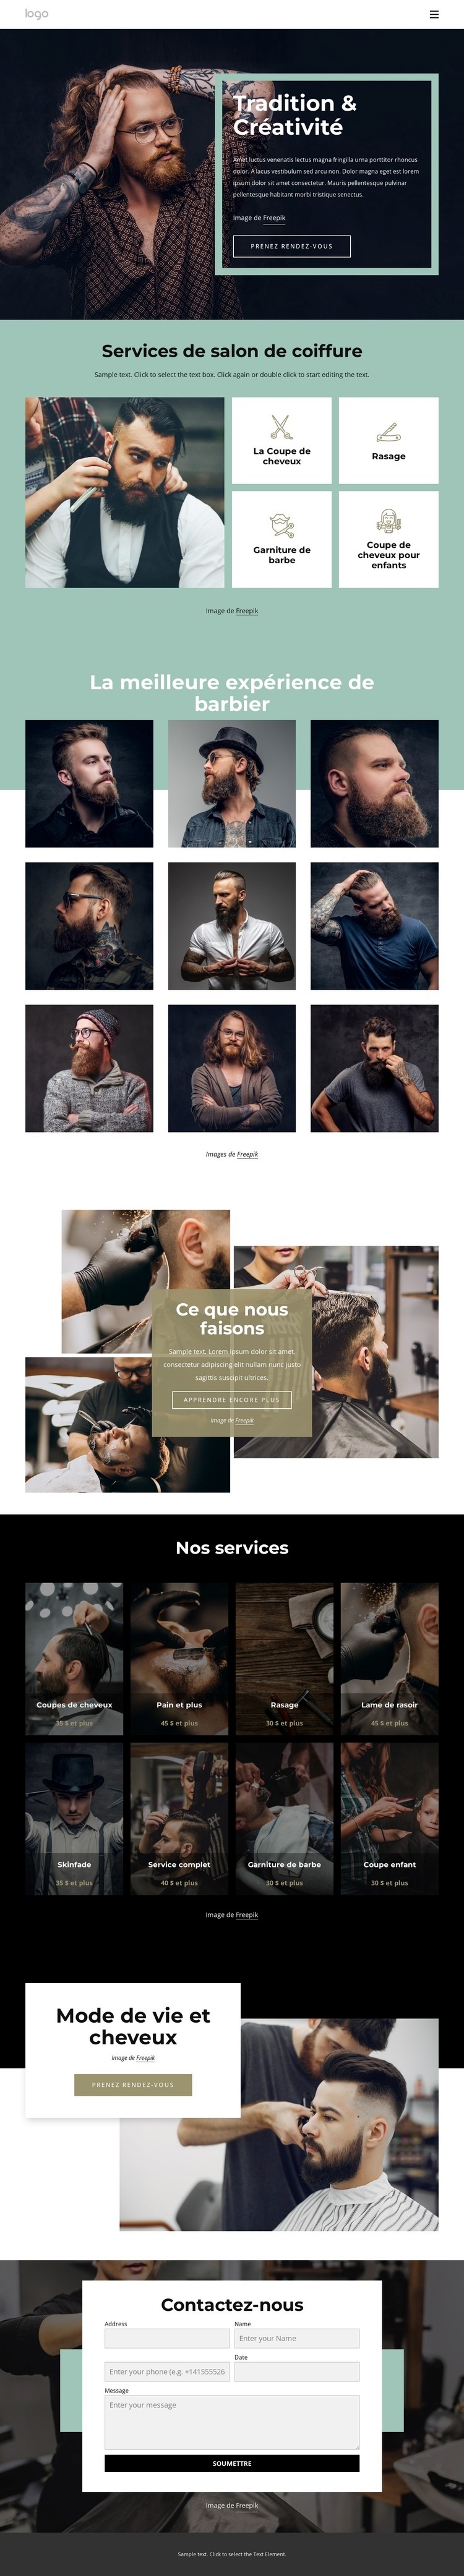 Salon de coiffure public Conception de site Web